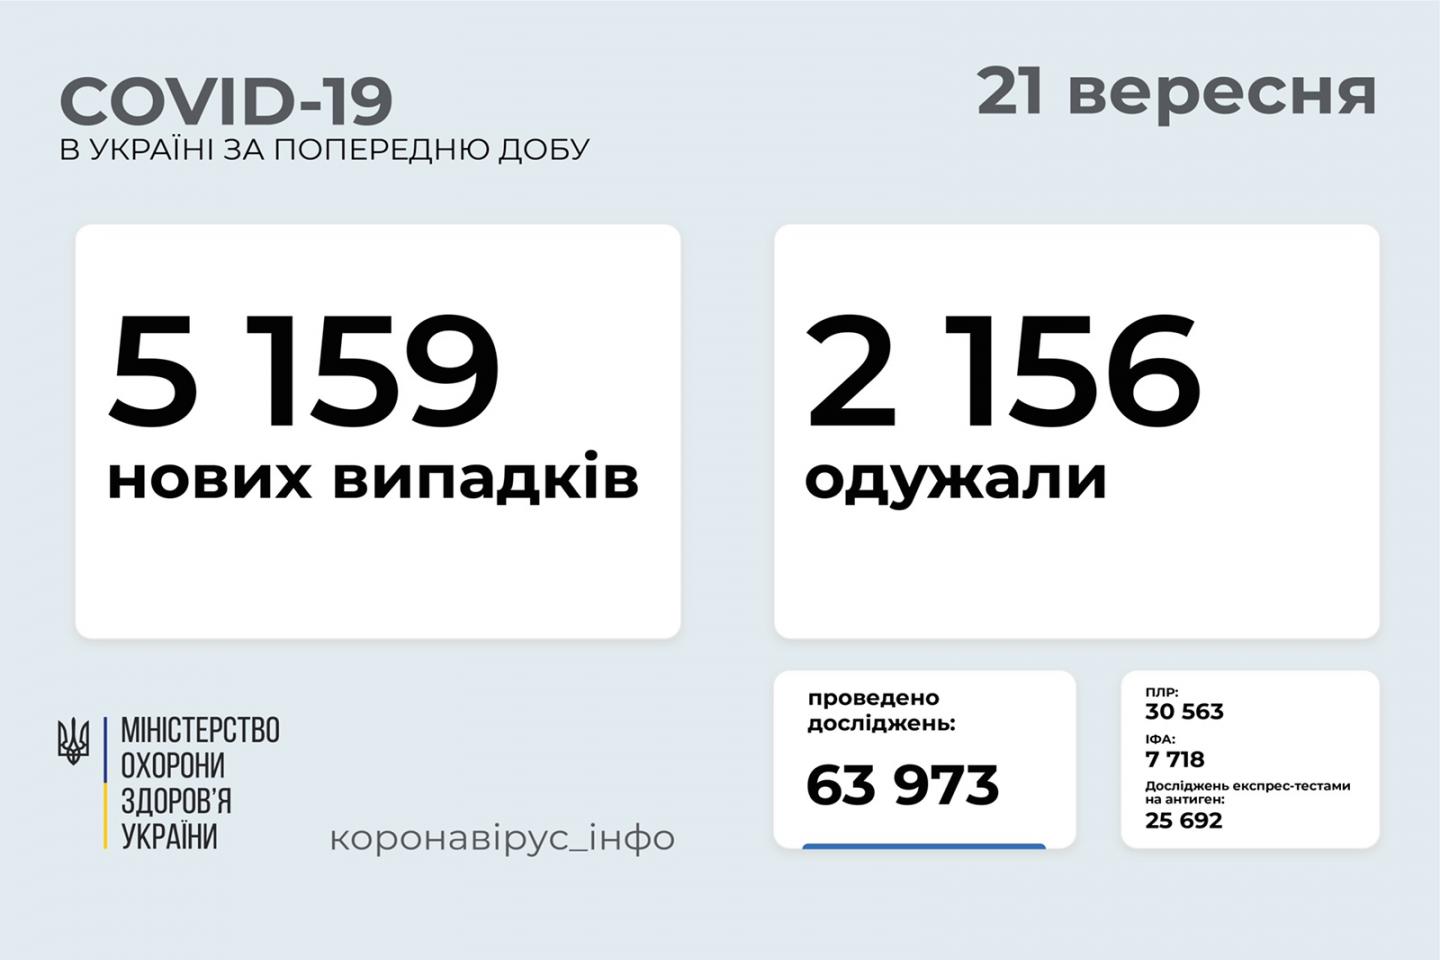 http://dunrada.gov.ua/uploadfile/archive_news/2021/09/21/2021-09-21_9348/images/images-65963.jpg